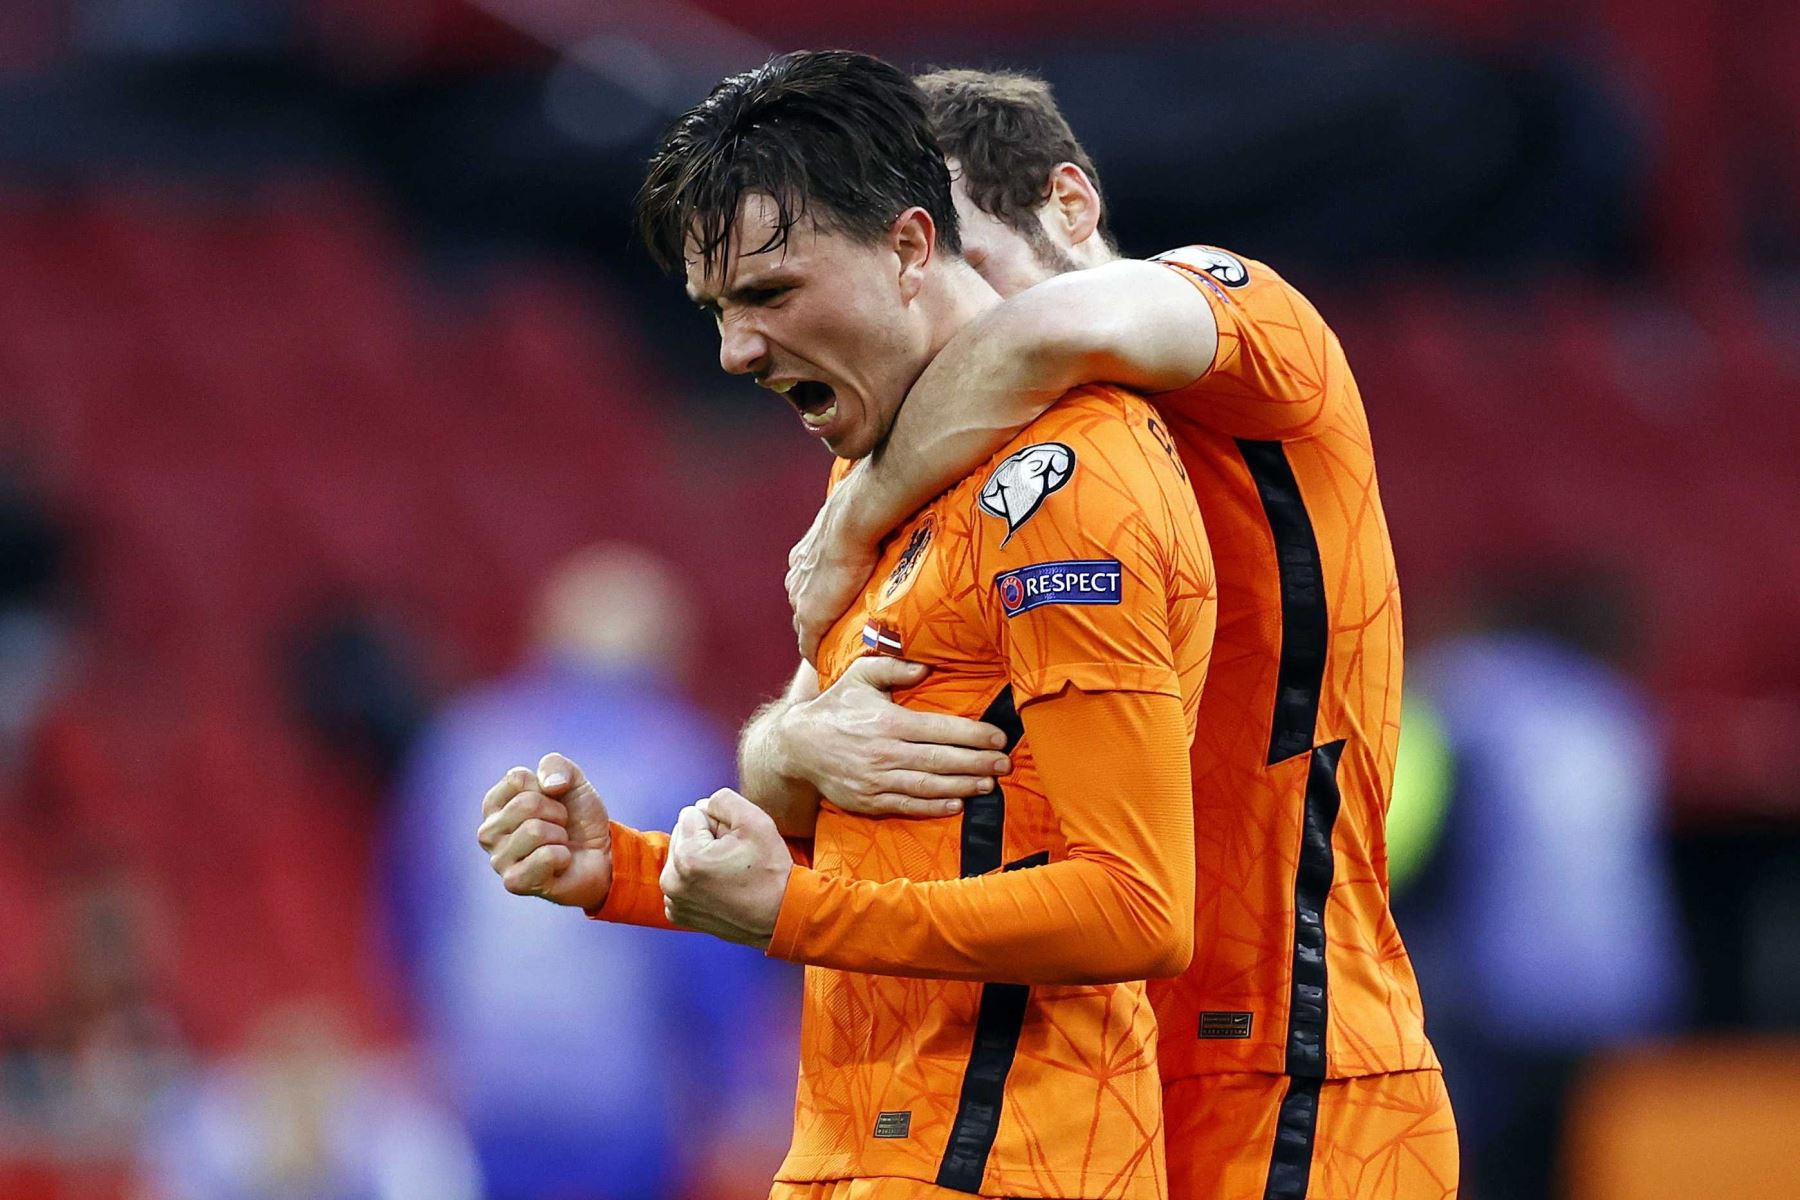 Steven Berghuis  de Holanda celebra tras anotar el gol 1-0 durante el partido clasificatorio para la Copa Mundial de la FIFA 2022 entre Holanda y Letonia en el Johan Cruijff Arena en Amsterdam.
Foto: AFP